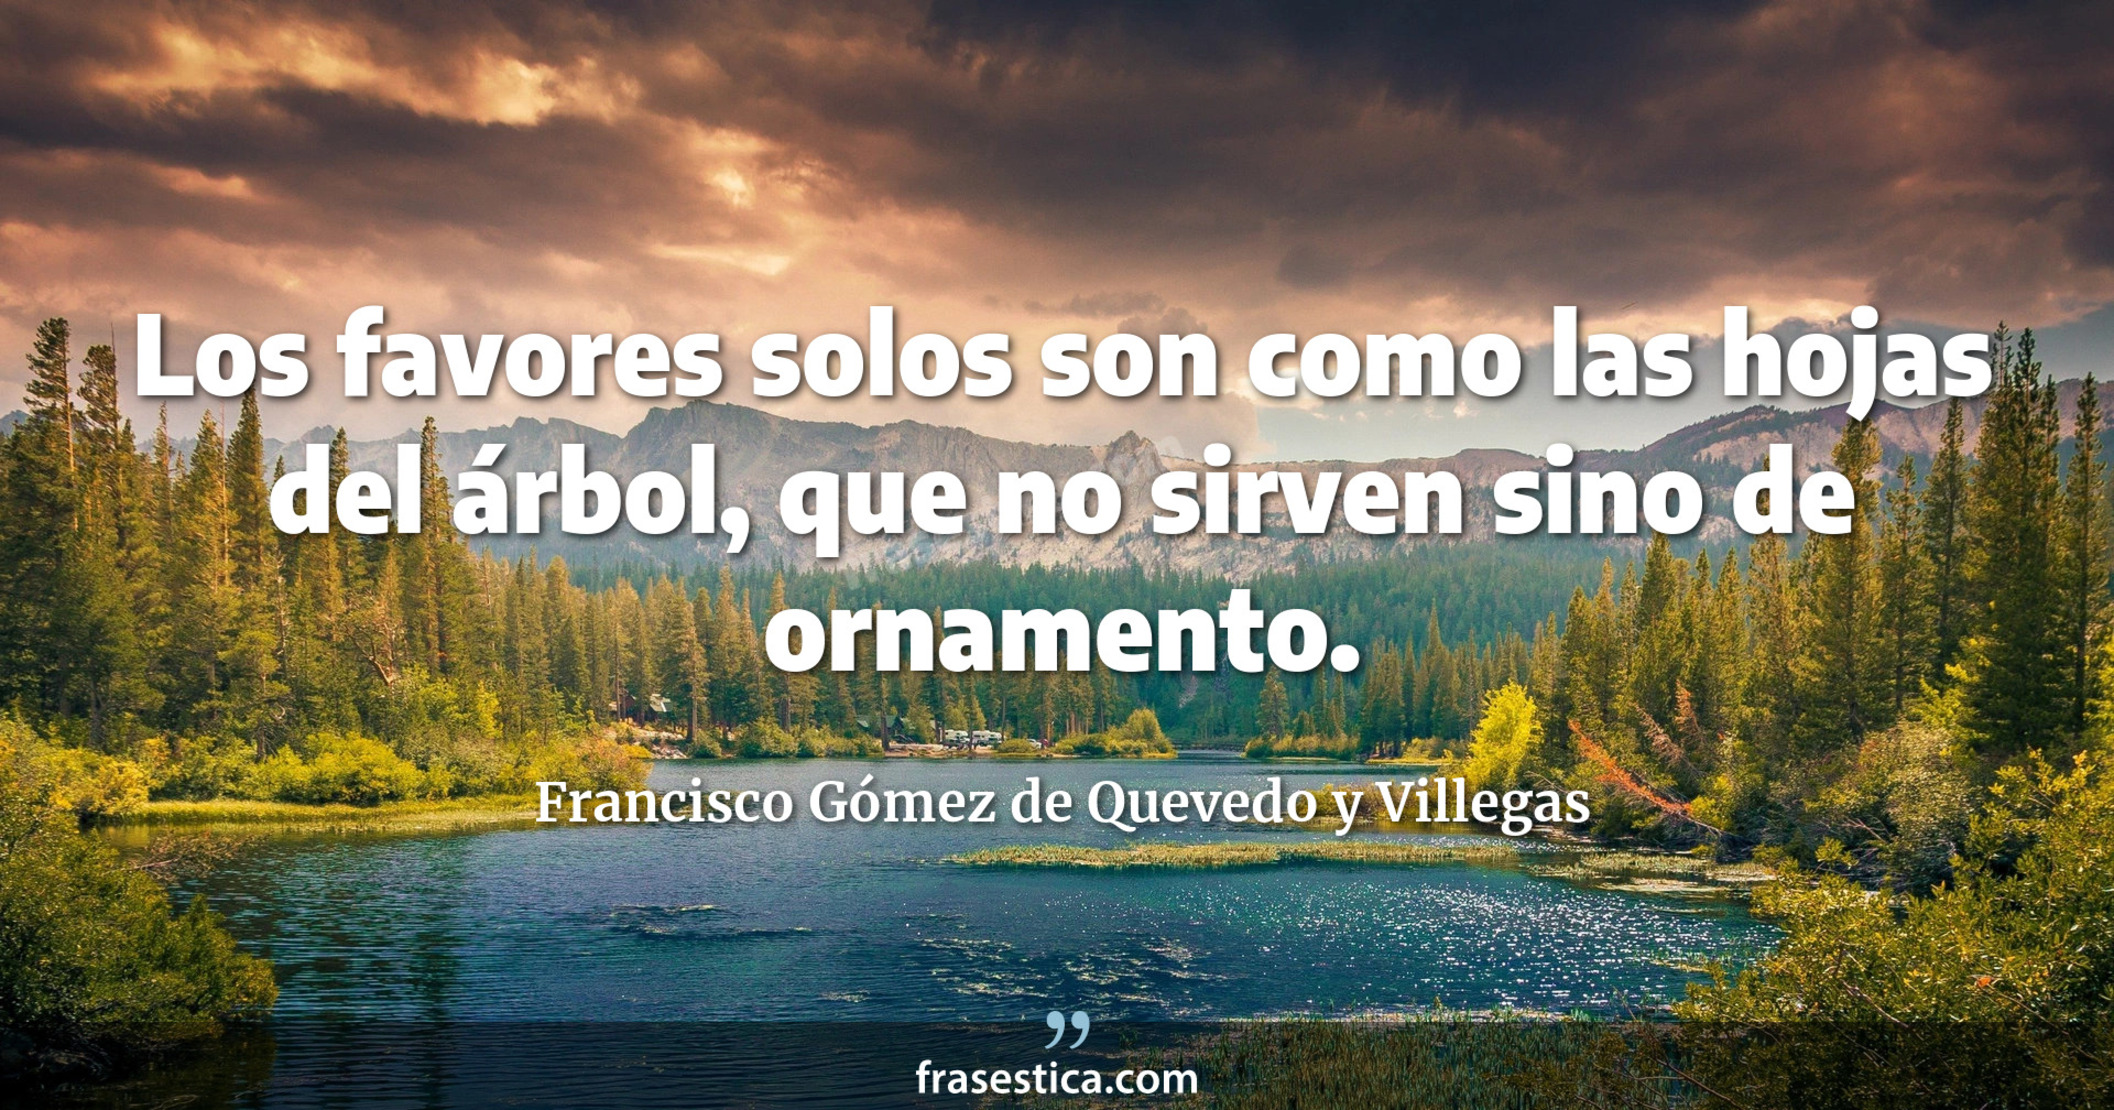 Los favores solos son como las hojas del árbol, que no sirven sino de ornamento. - Francisco Gómez de Quevedo y Villegas